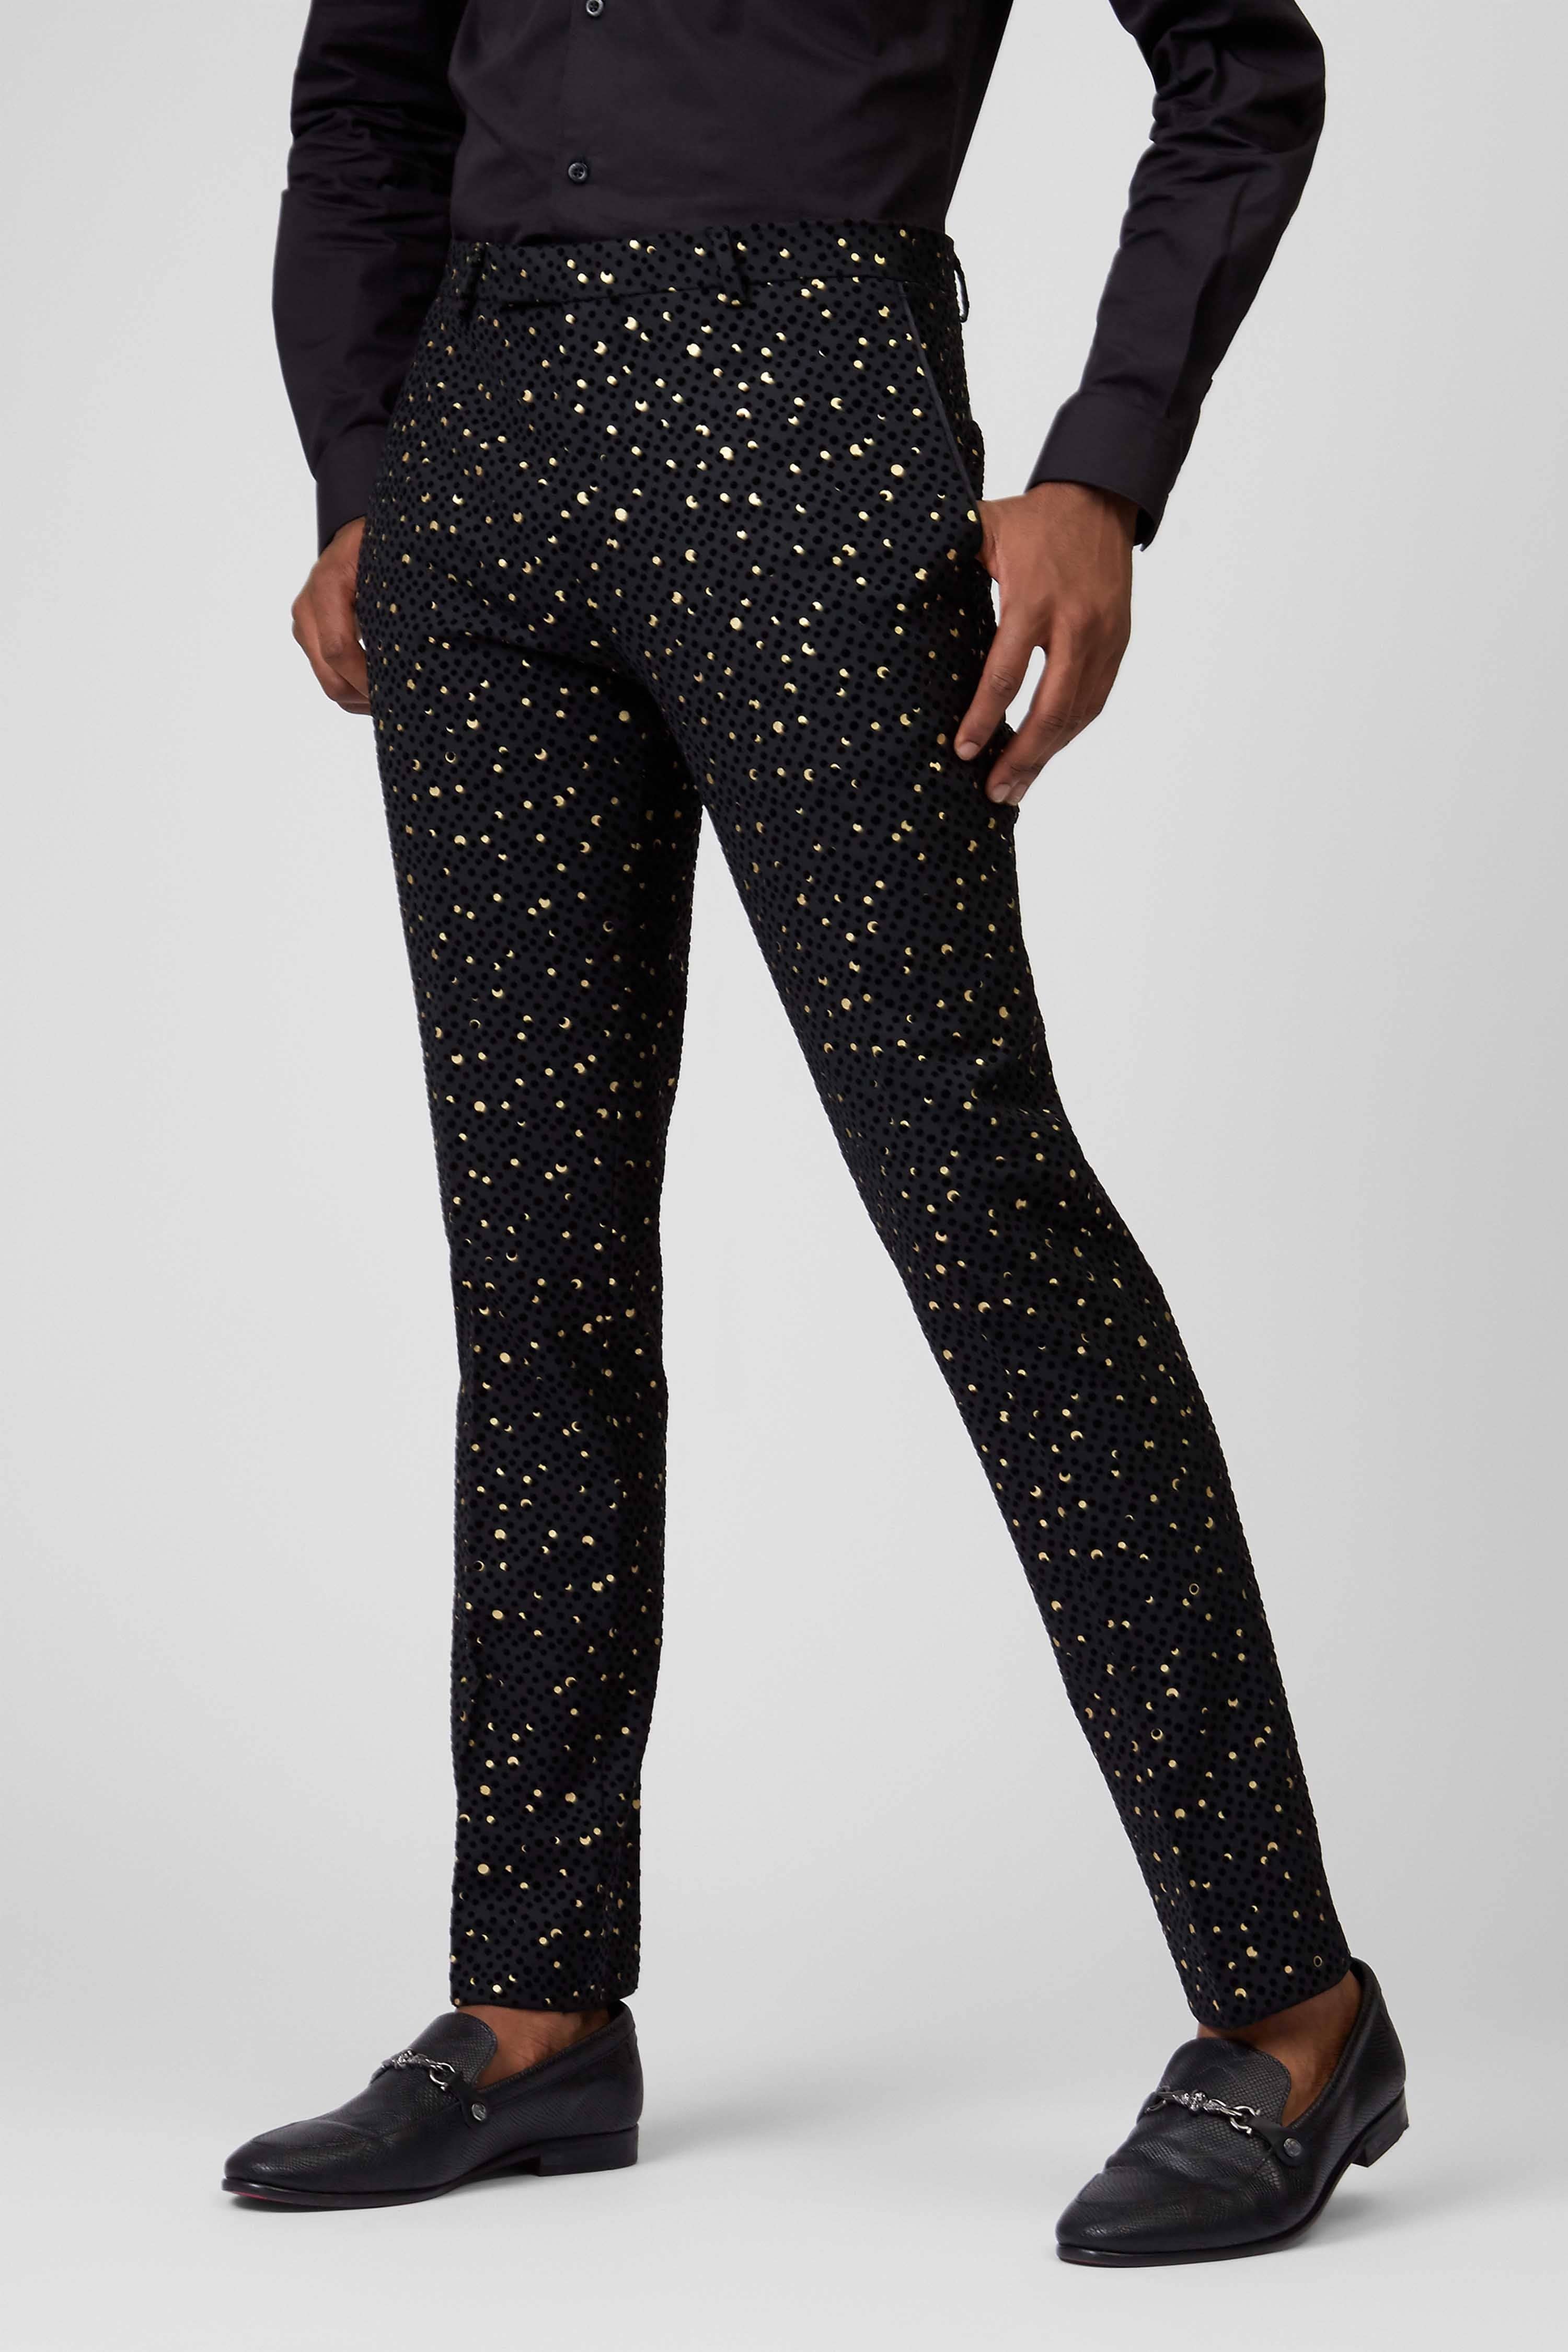 Buy Blue Velvet Kurti & Golden Pants Online | DressingStylesCA.com